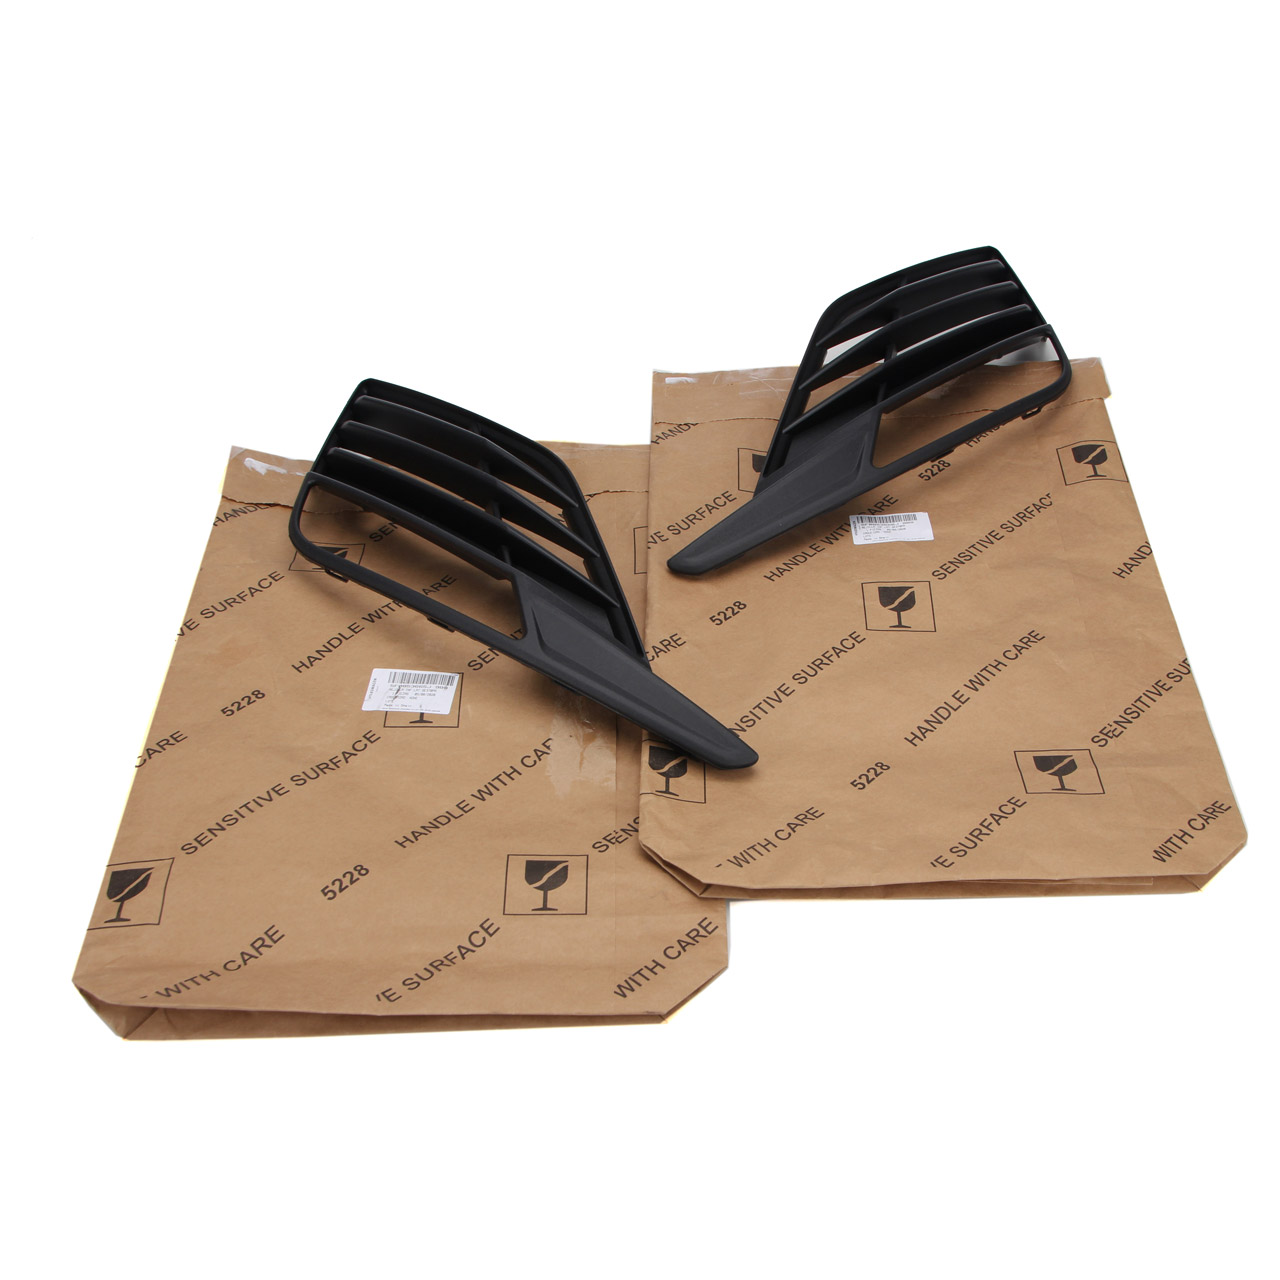 2x ORIGINAL SEAT CUPRA Facelift Nebelscheinwerfer Abdeckung LEON